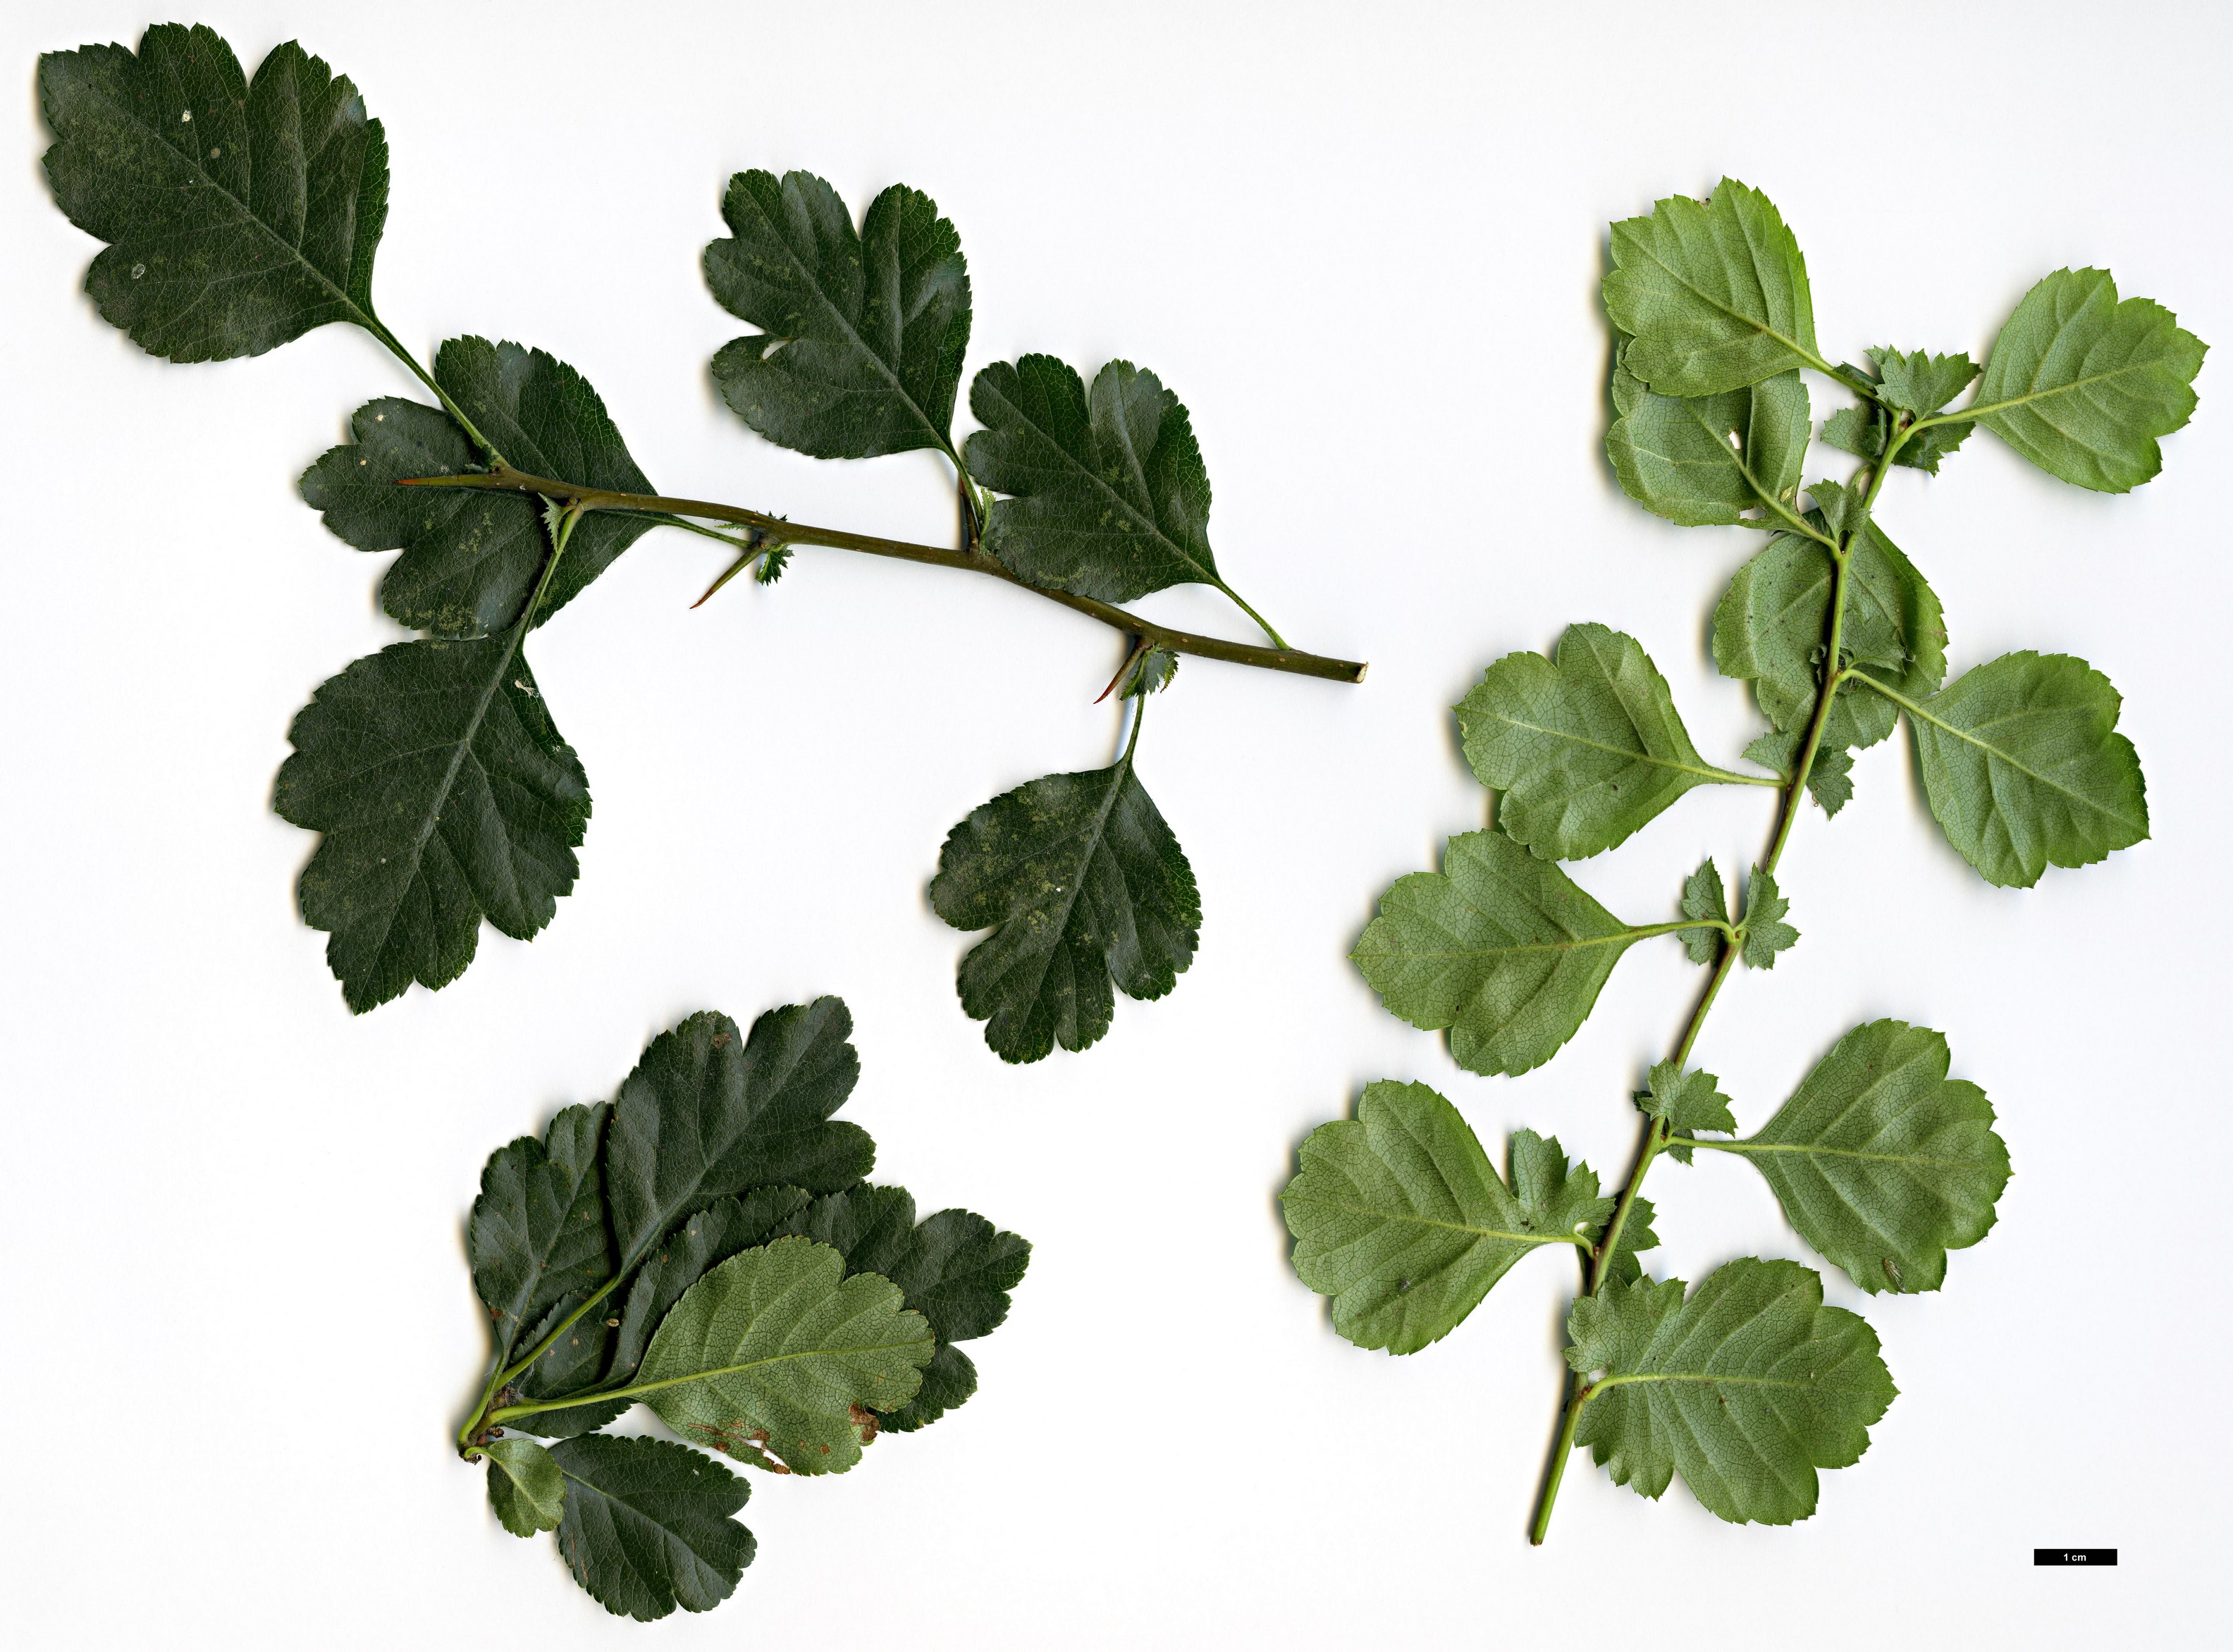 High resolution image: Family: Rosaceae - Genus: Crataegus - Taxon: laevigata